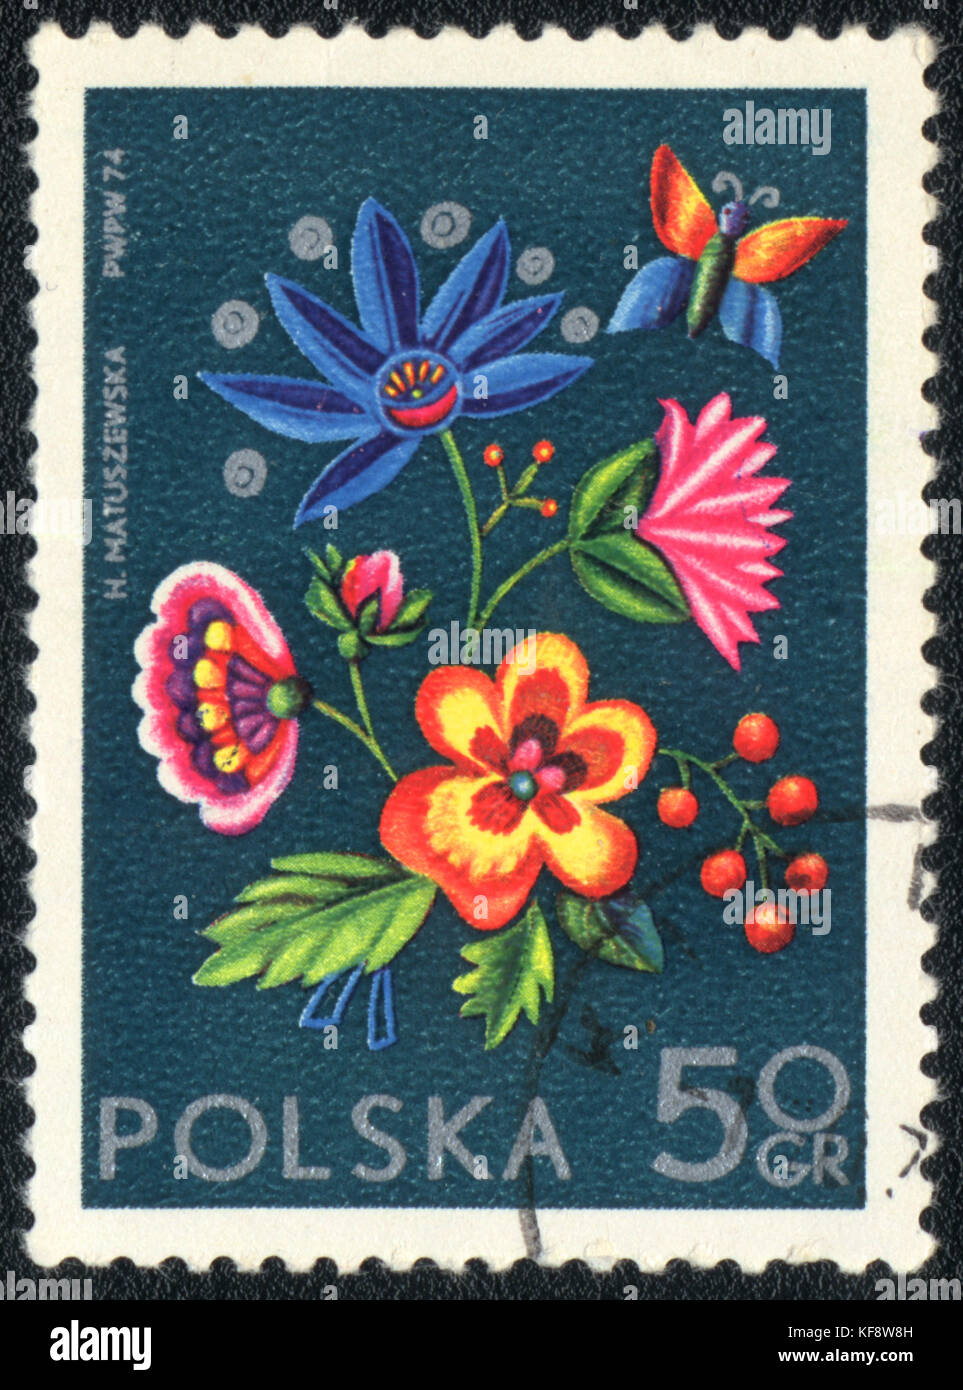 Eine Briefmarke in Polen gedruckt zeigt eine polnische Blumendekor, ca. 1974 Stockfoto